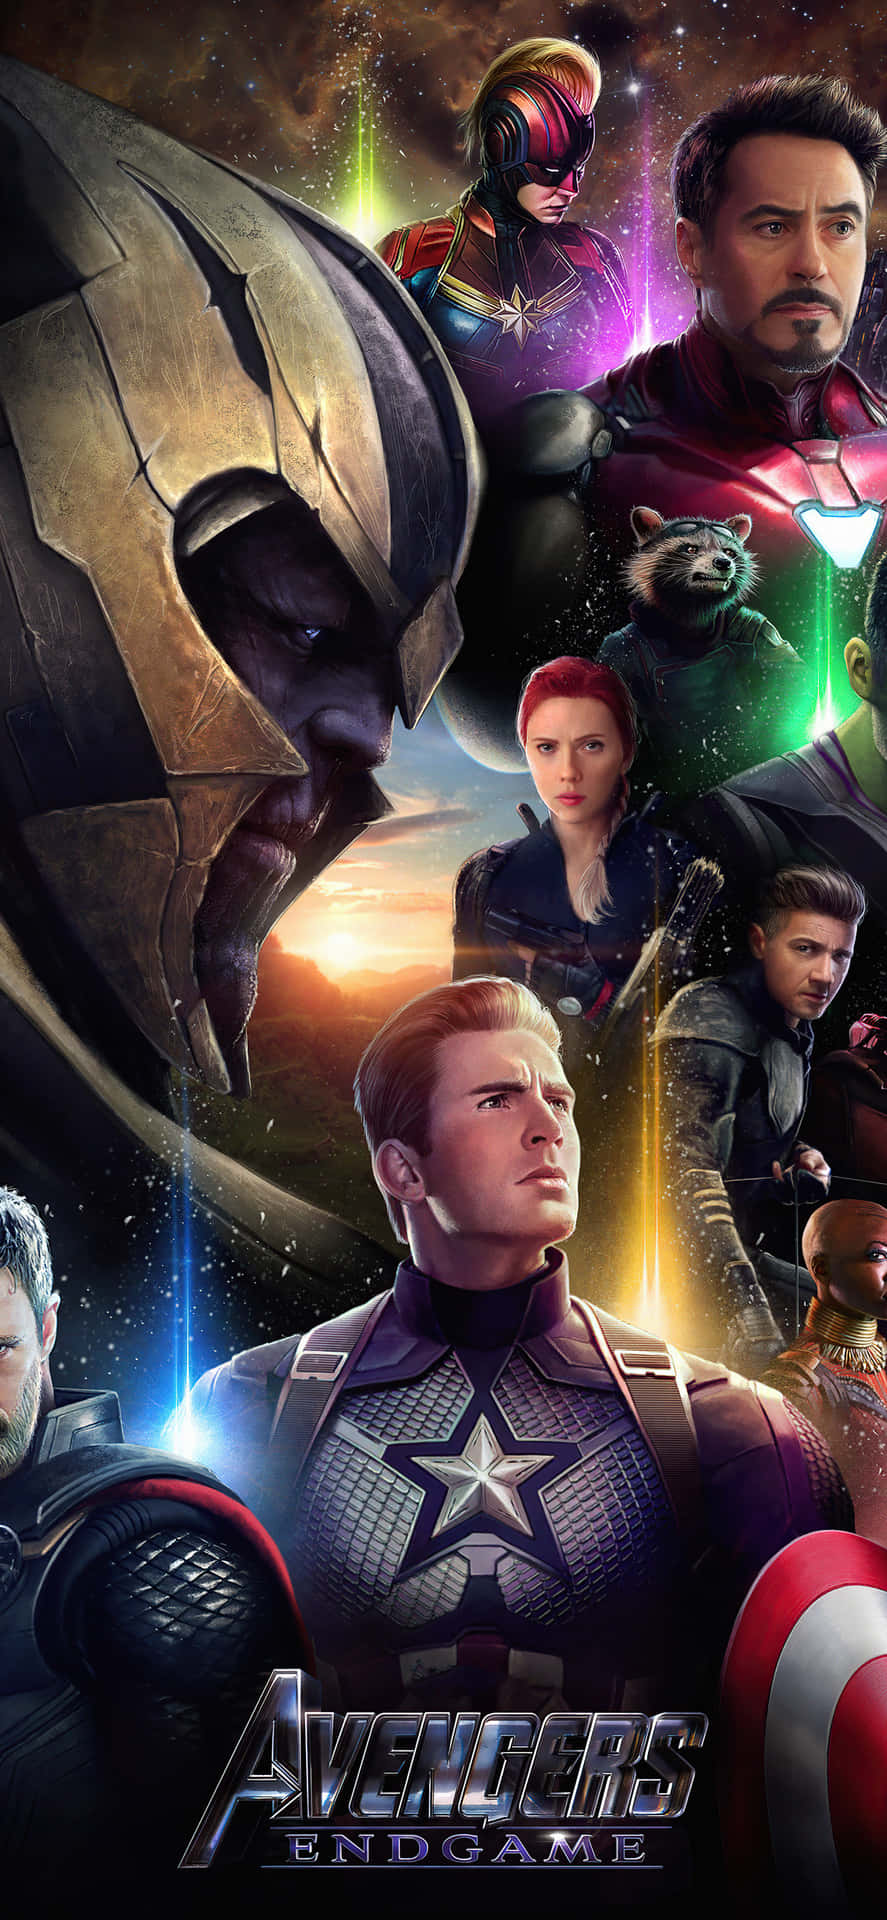 De Avengers samles for at kæmpe mod ondskab. Wallpaper